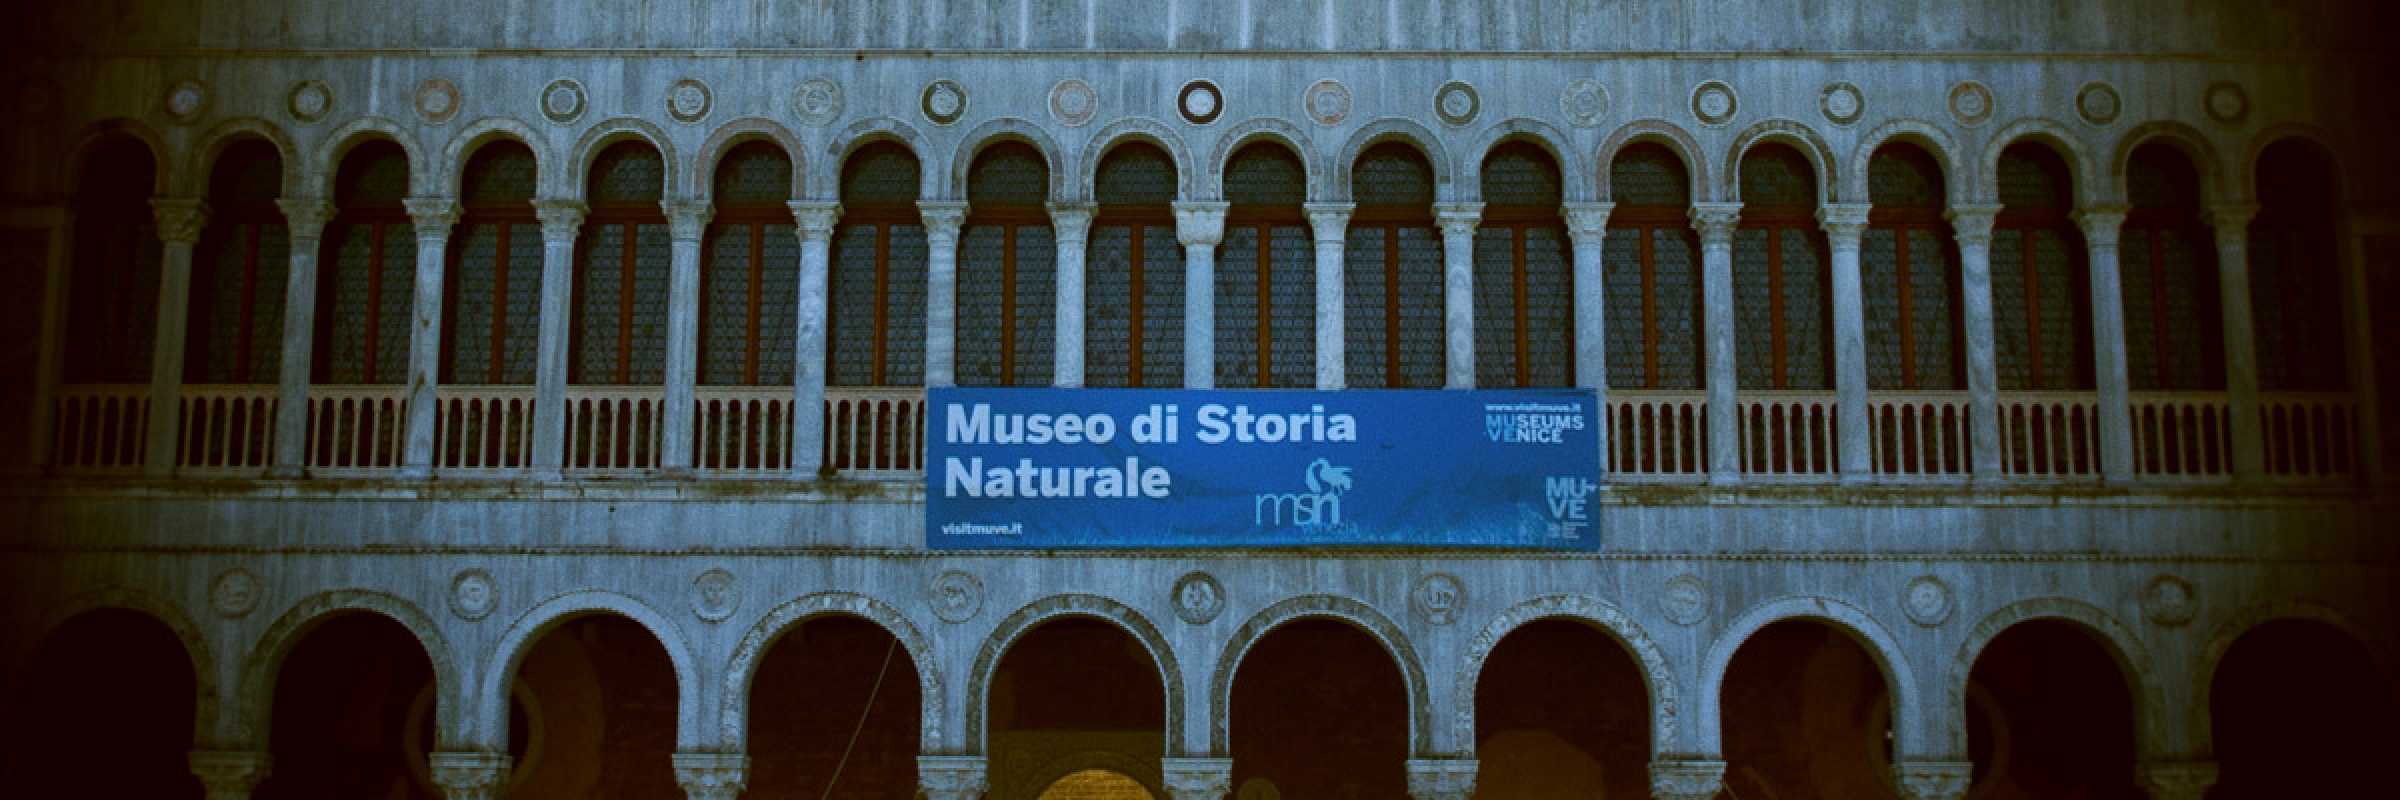 La facciata del Fontego dei Tedeschi, la sede del Museo di Storia Naturale.